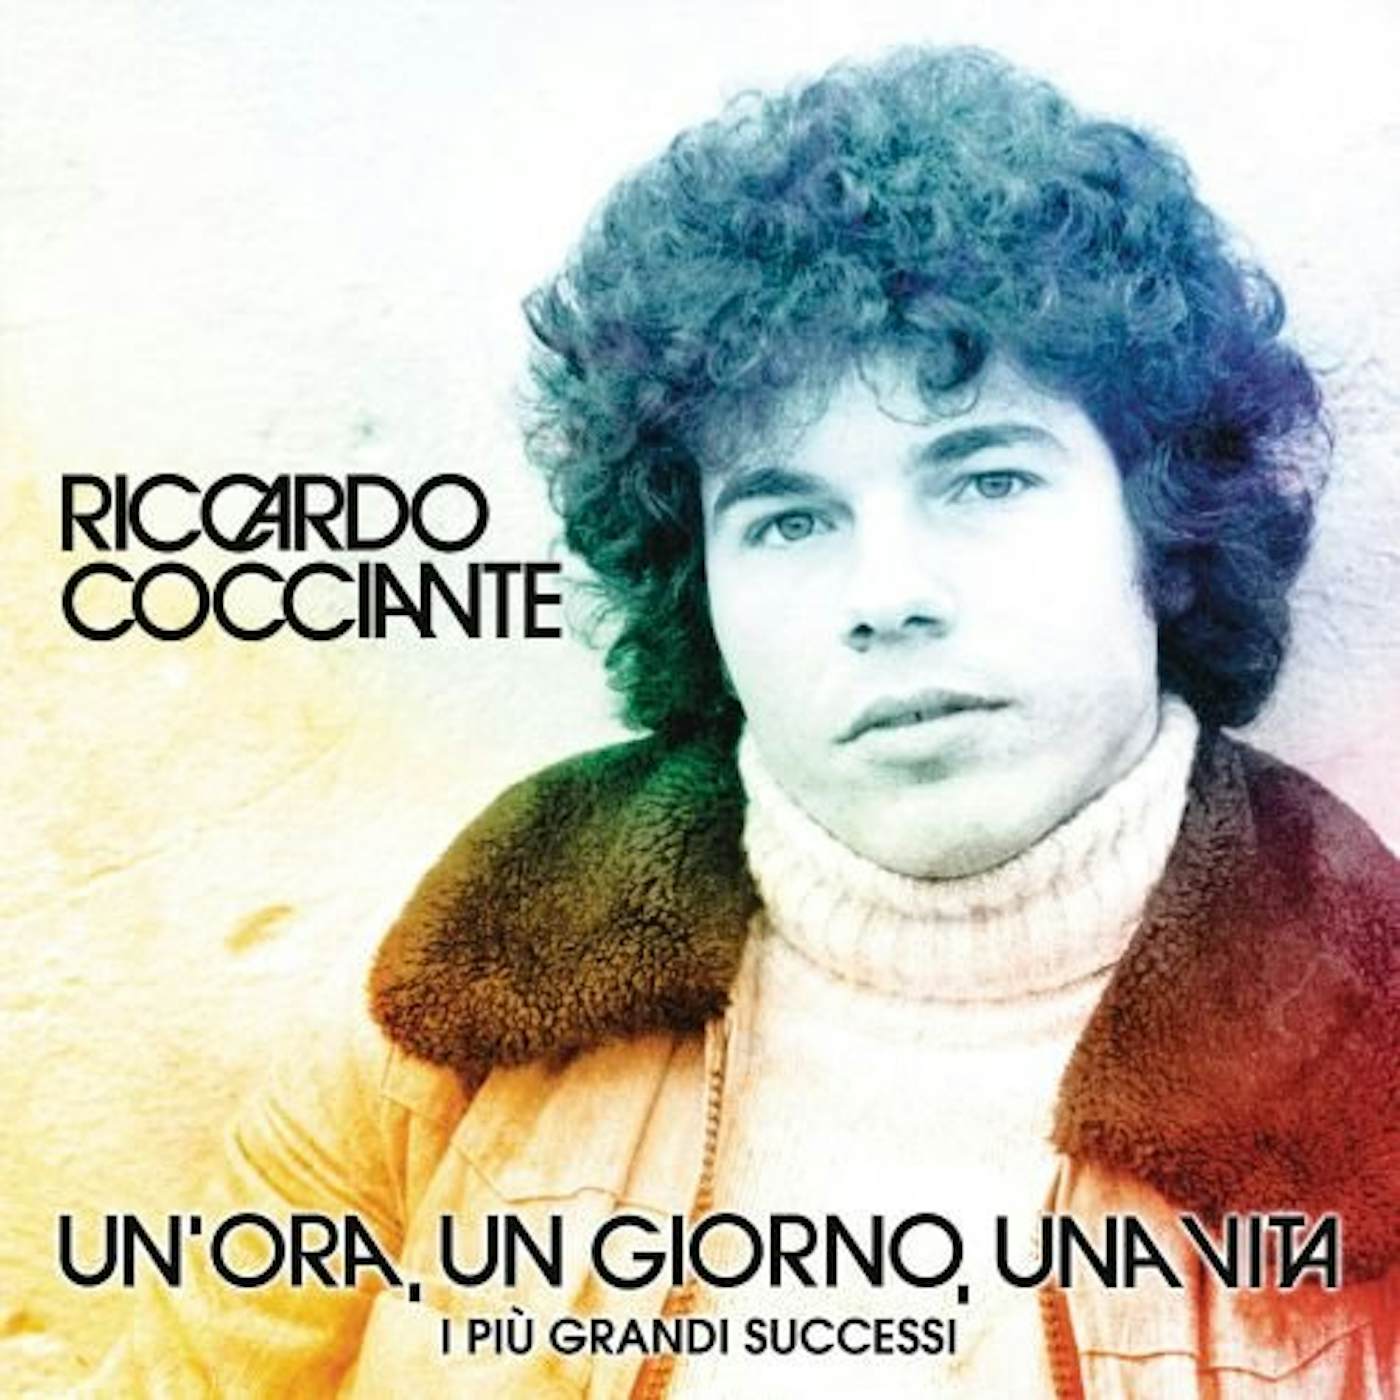 Riccardo Cocciante UN ORA UN GIORNO UNA VITA Vinyl Record